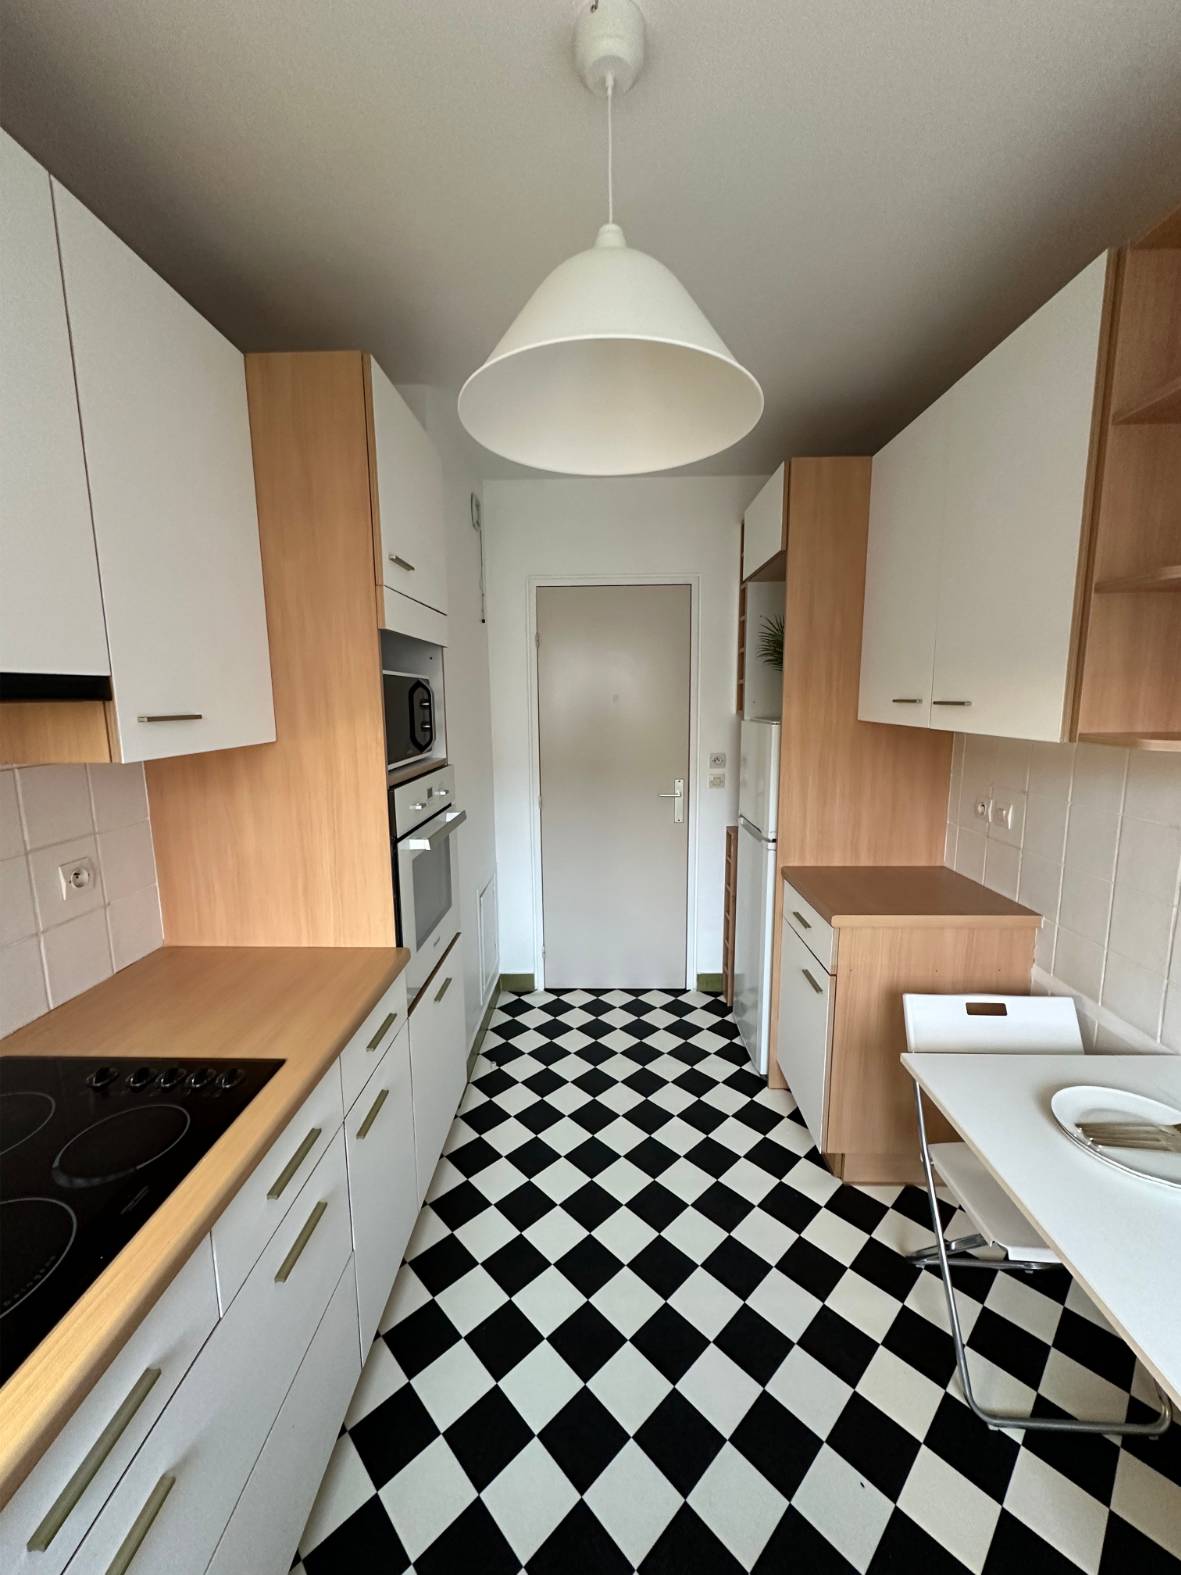 Une cuisine moderne avec un sol en damier noir et blanc, des armoires en bois clair et des comptoirs blancs.